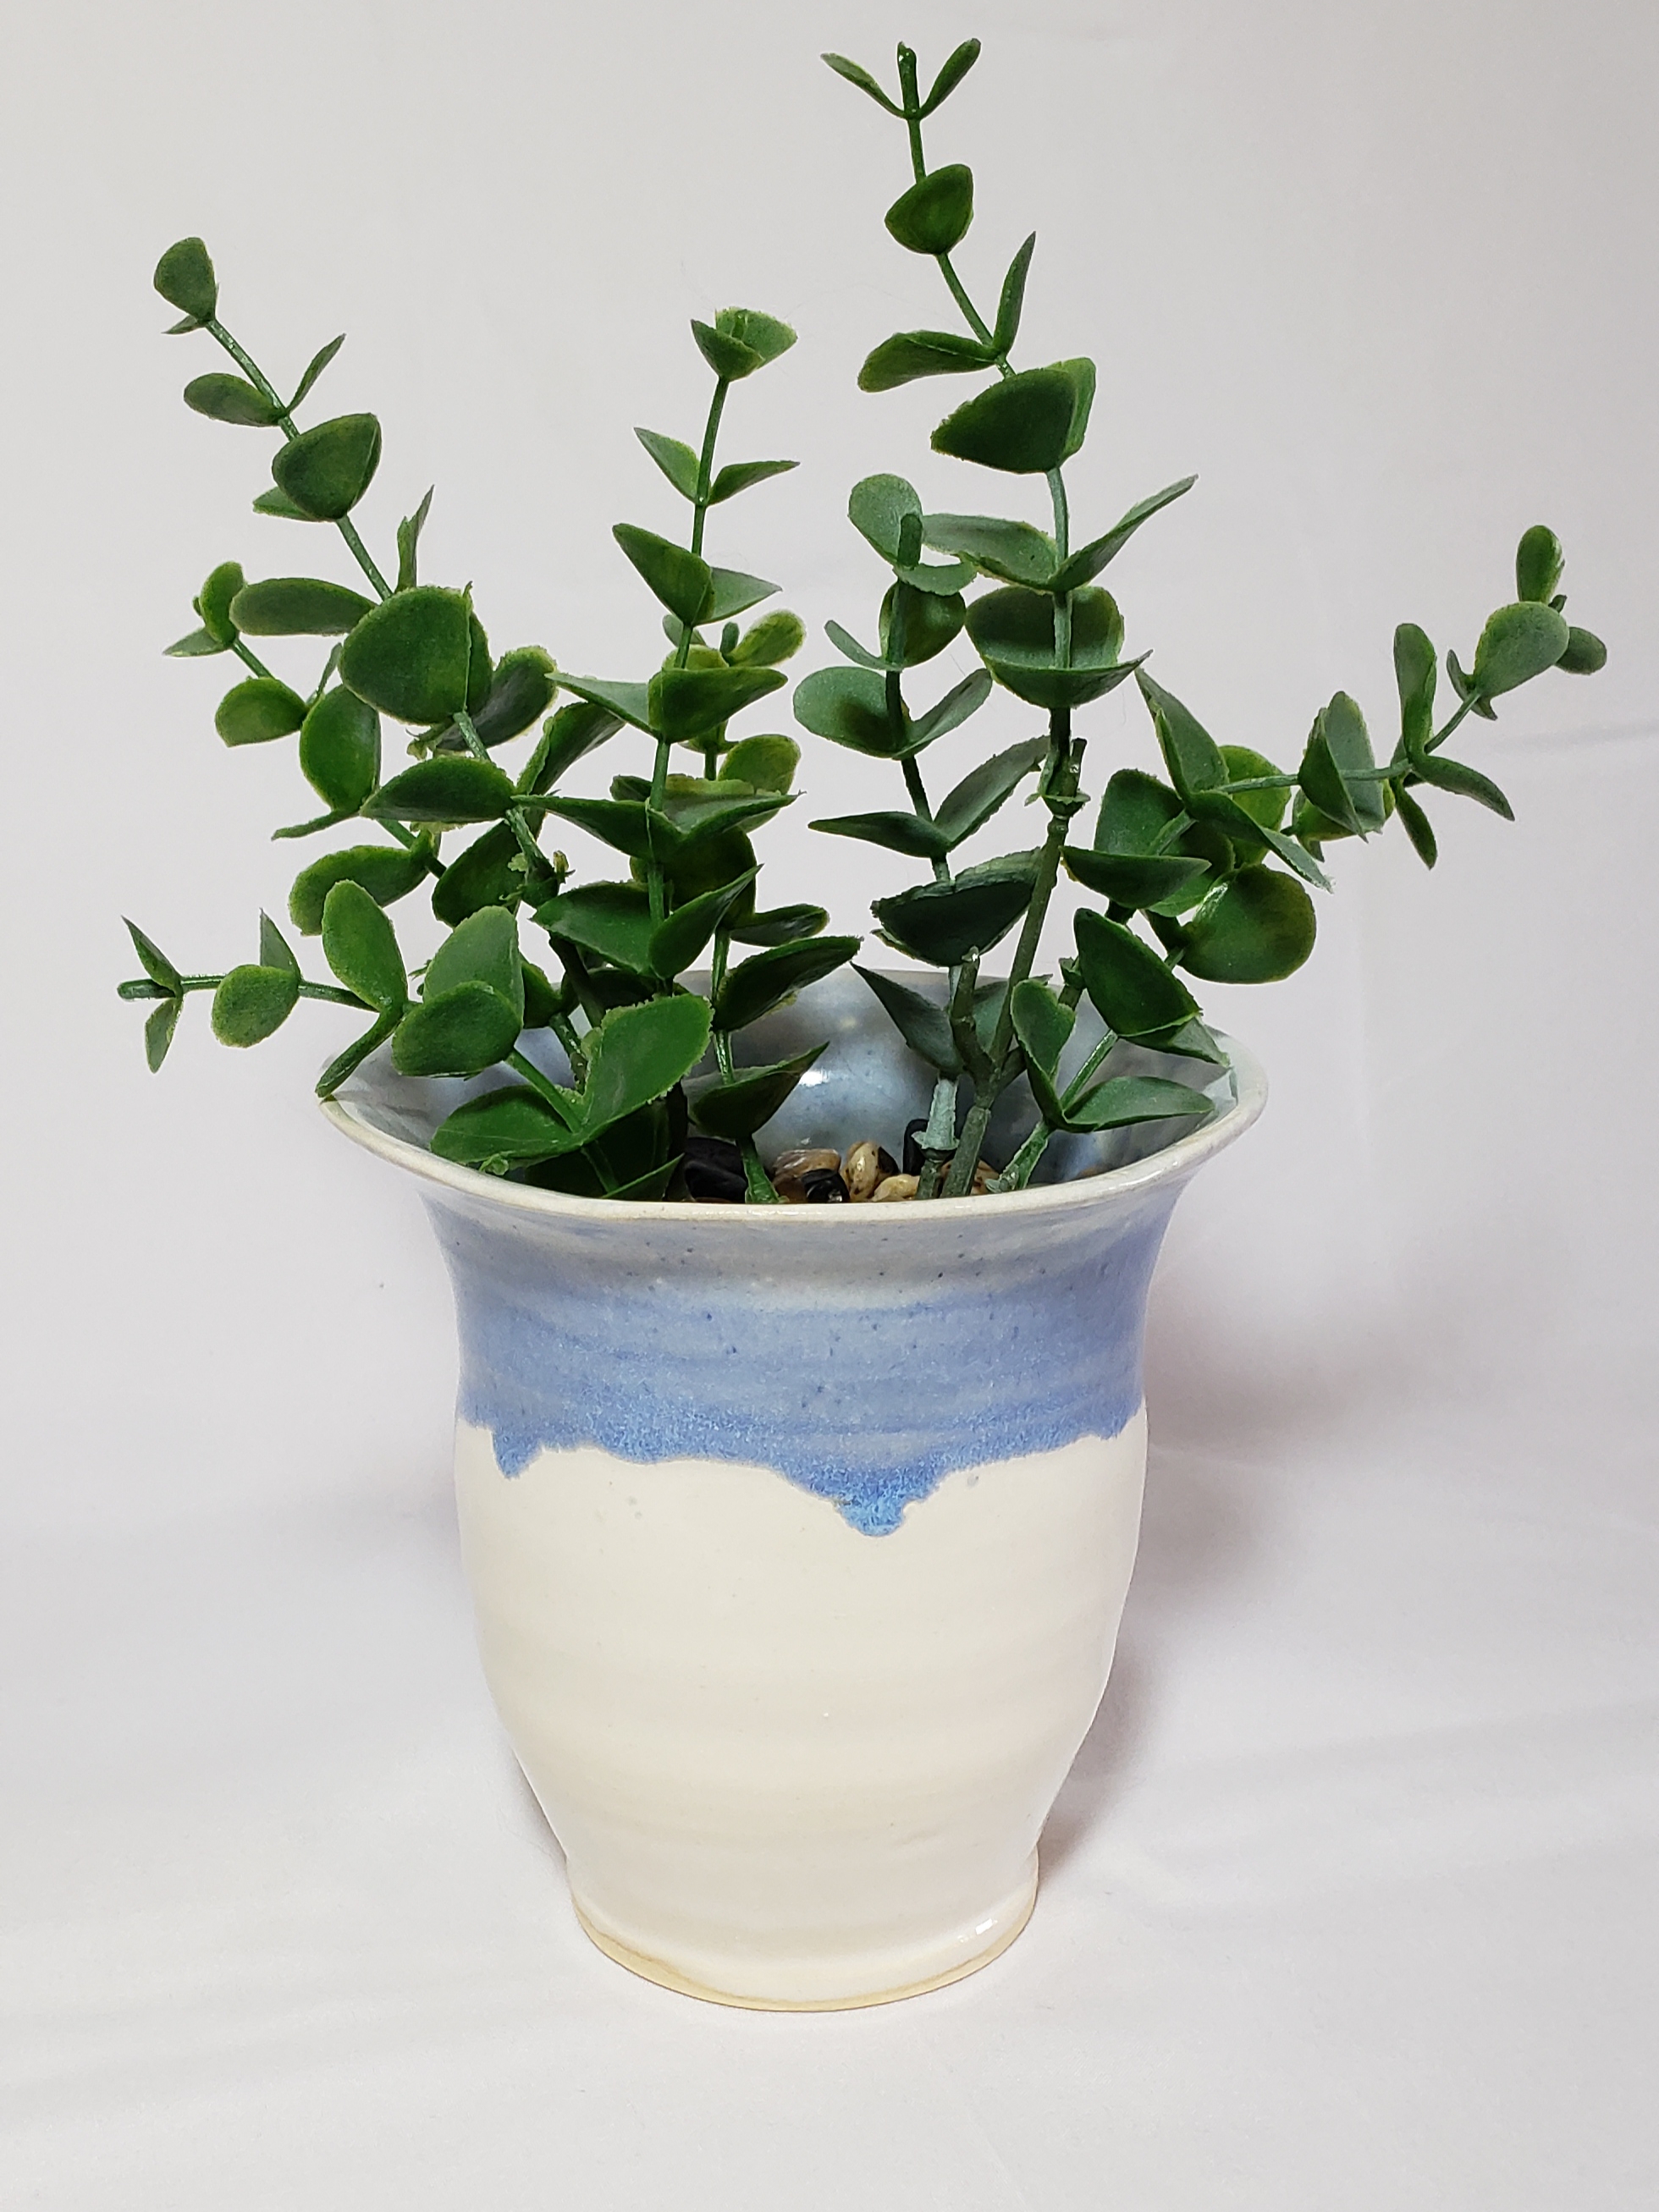 Ceramic Blue Vase